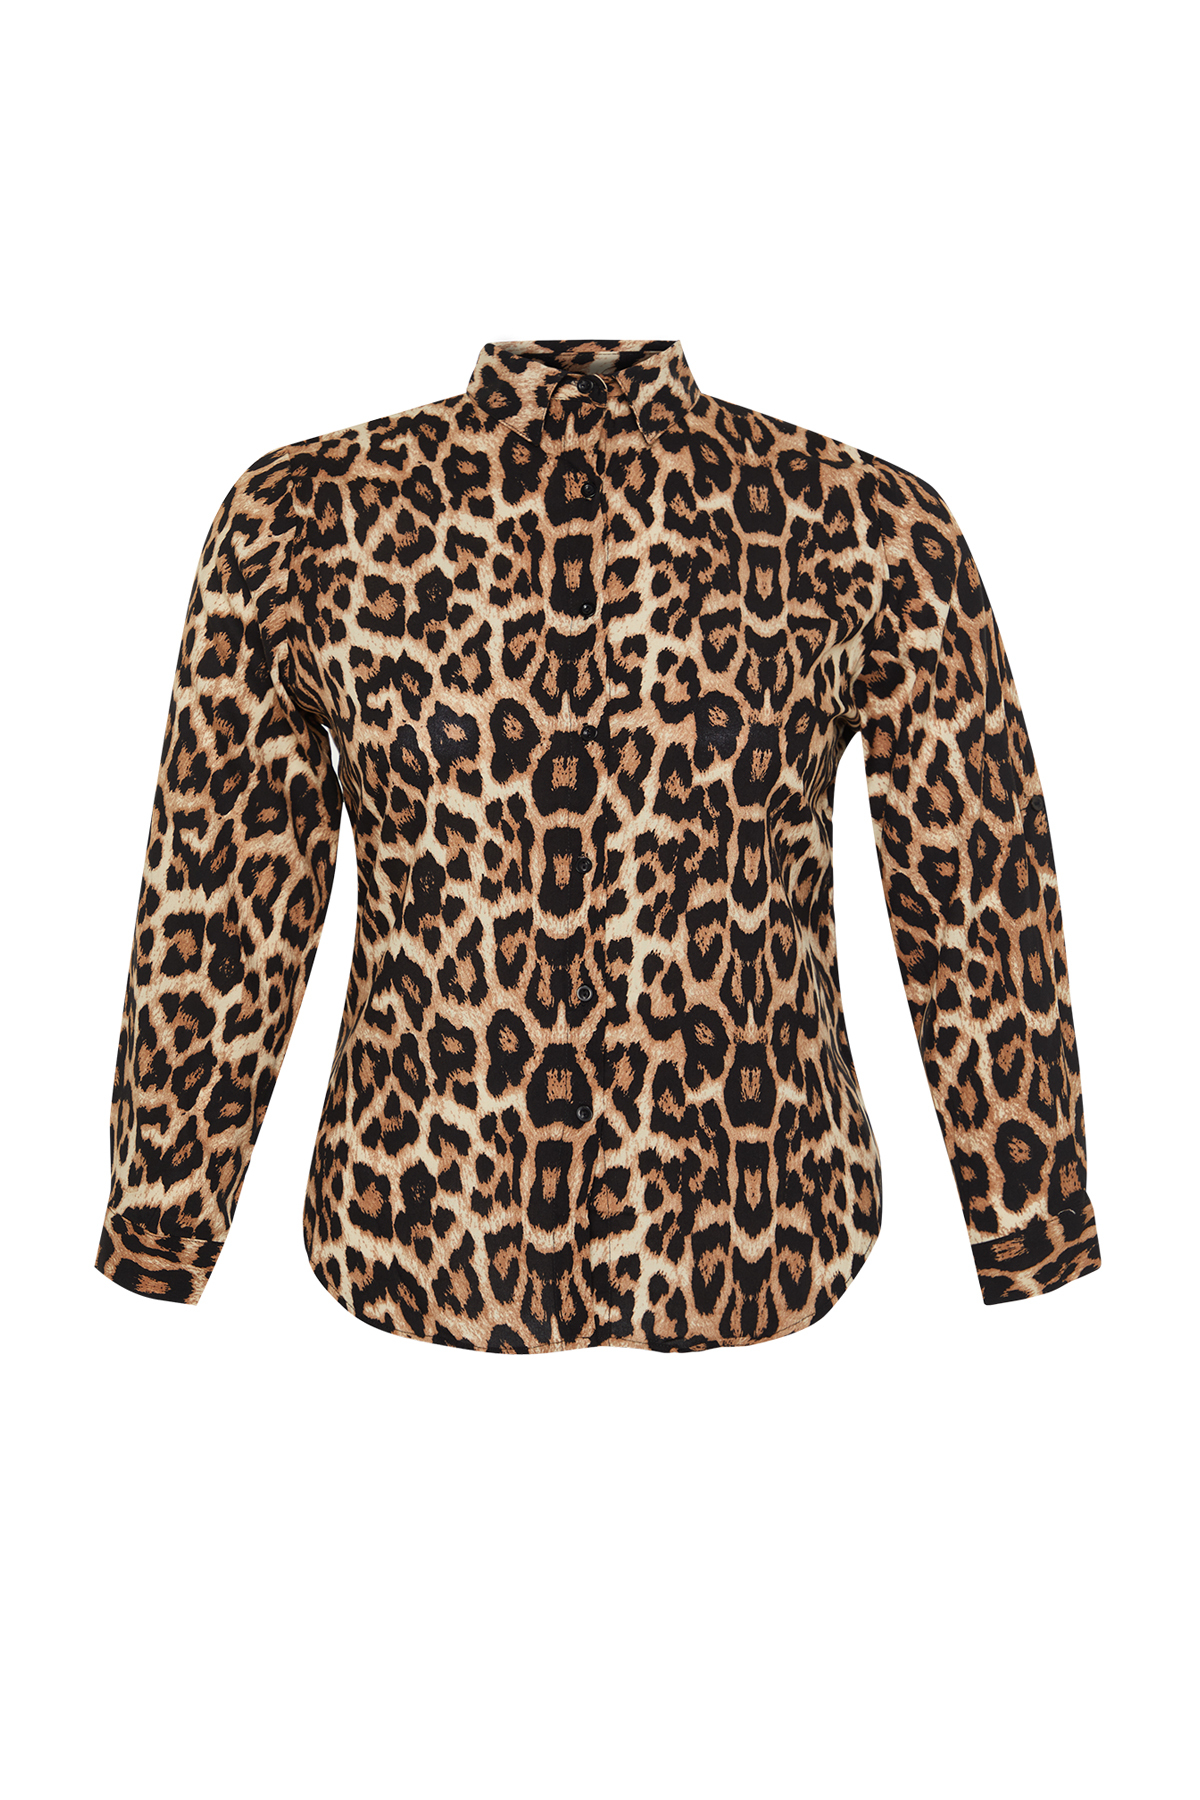 Trendyol Curve Multi Color Leopard Pattern Plus Size Shirt